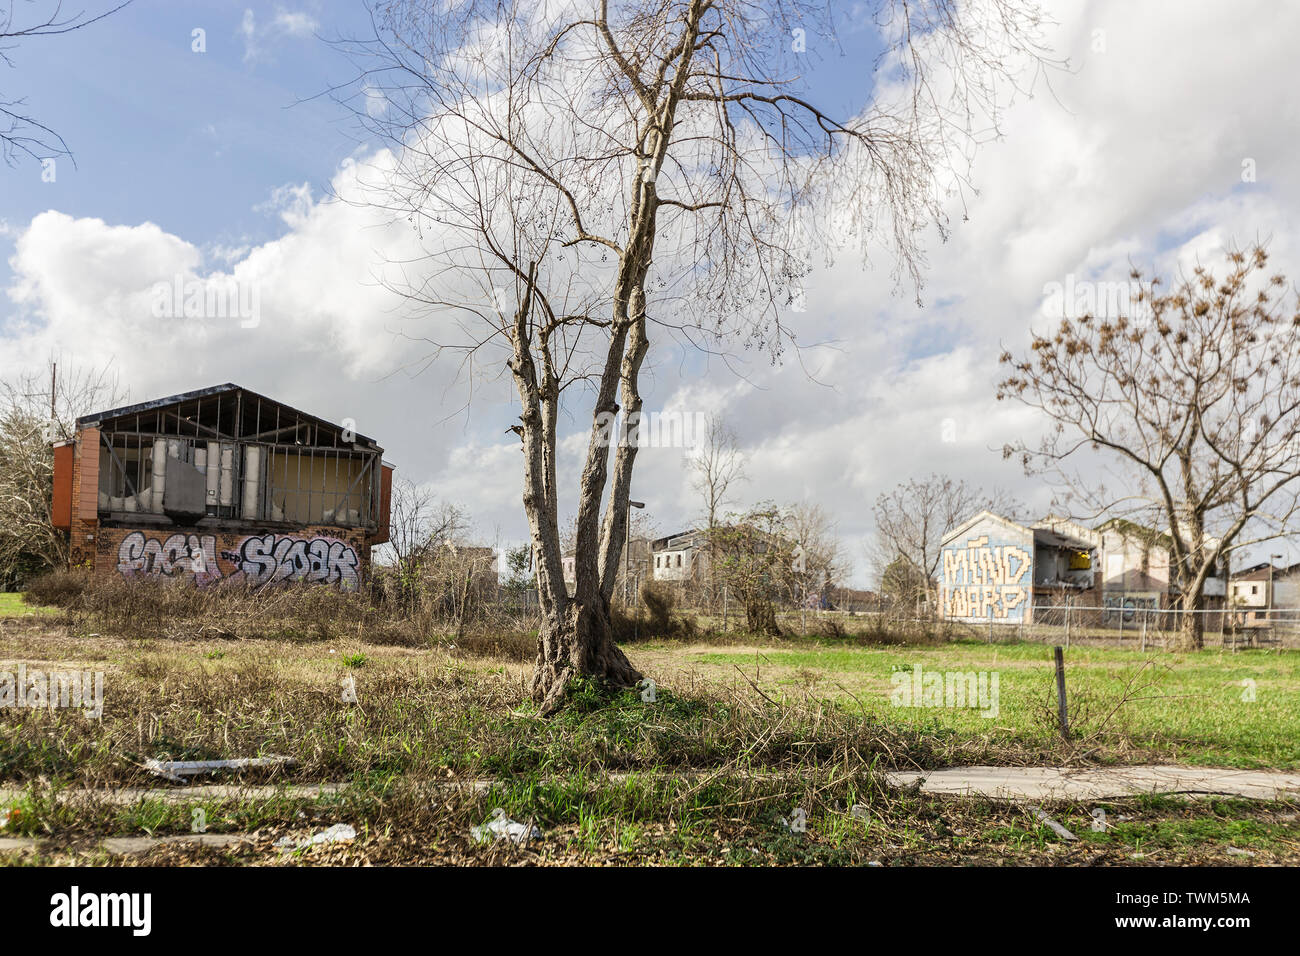 Danni rimane anni dopo l'uragano Katrina ha devastato la Bassa 9. Ward a New Orleans, Louisiana Foto Stock